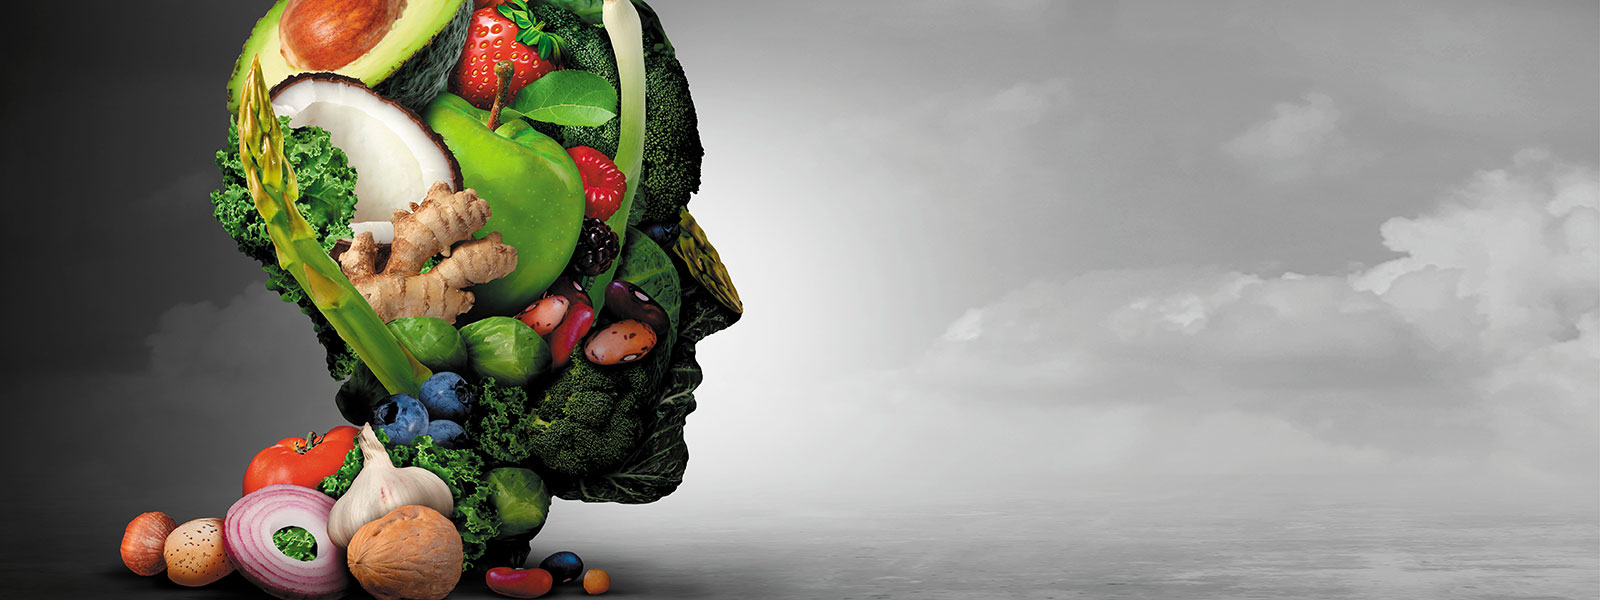 Ein Kopf als Kunstwerk, gefüllt mit verschiedenen Gemüsesorten und Früchten